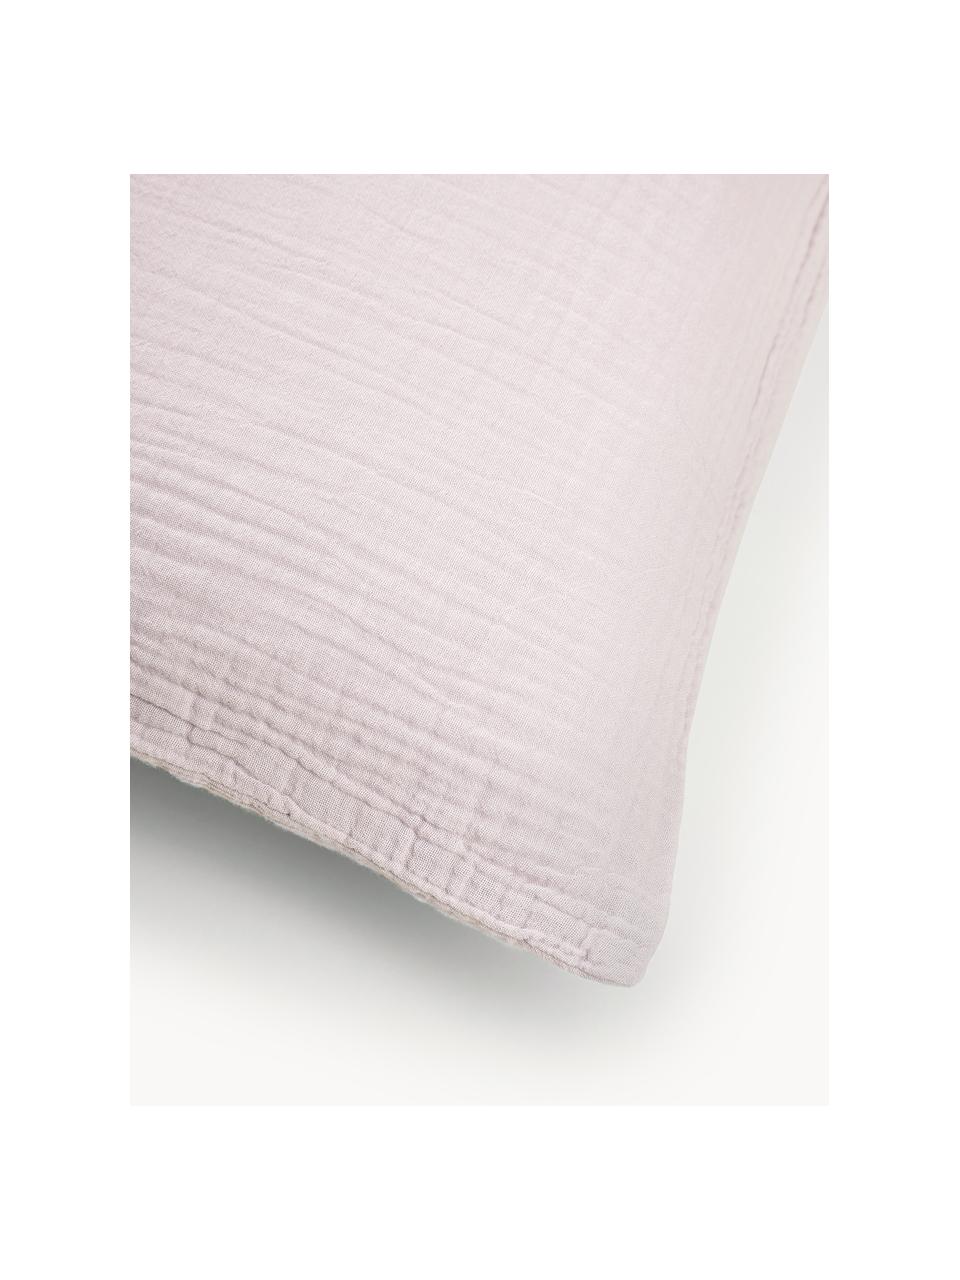 Poszewka na poduszkę z muślinu bawełnianego Odile, Jasny różowy, S 40 x D 80 cm